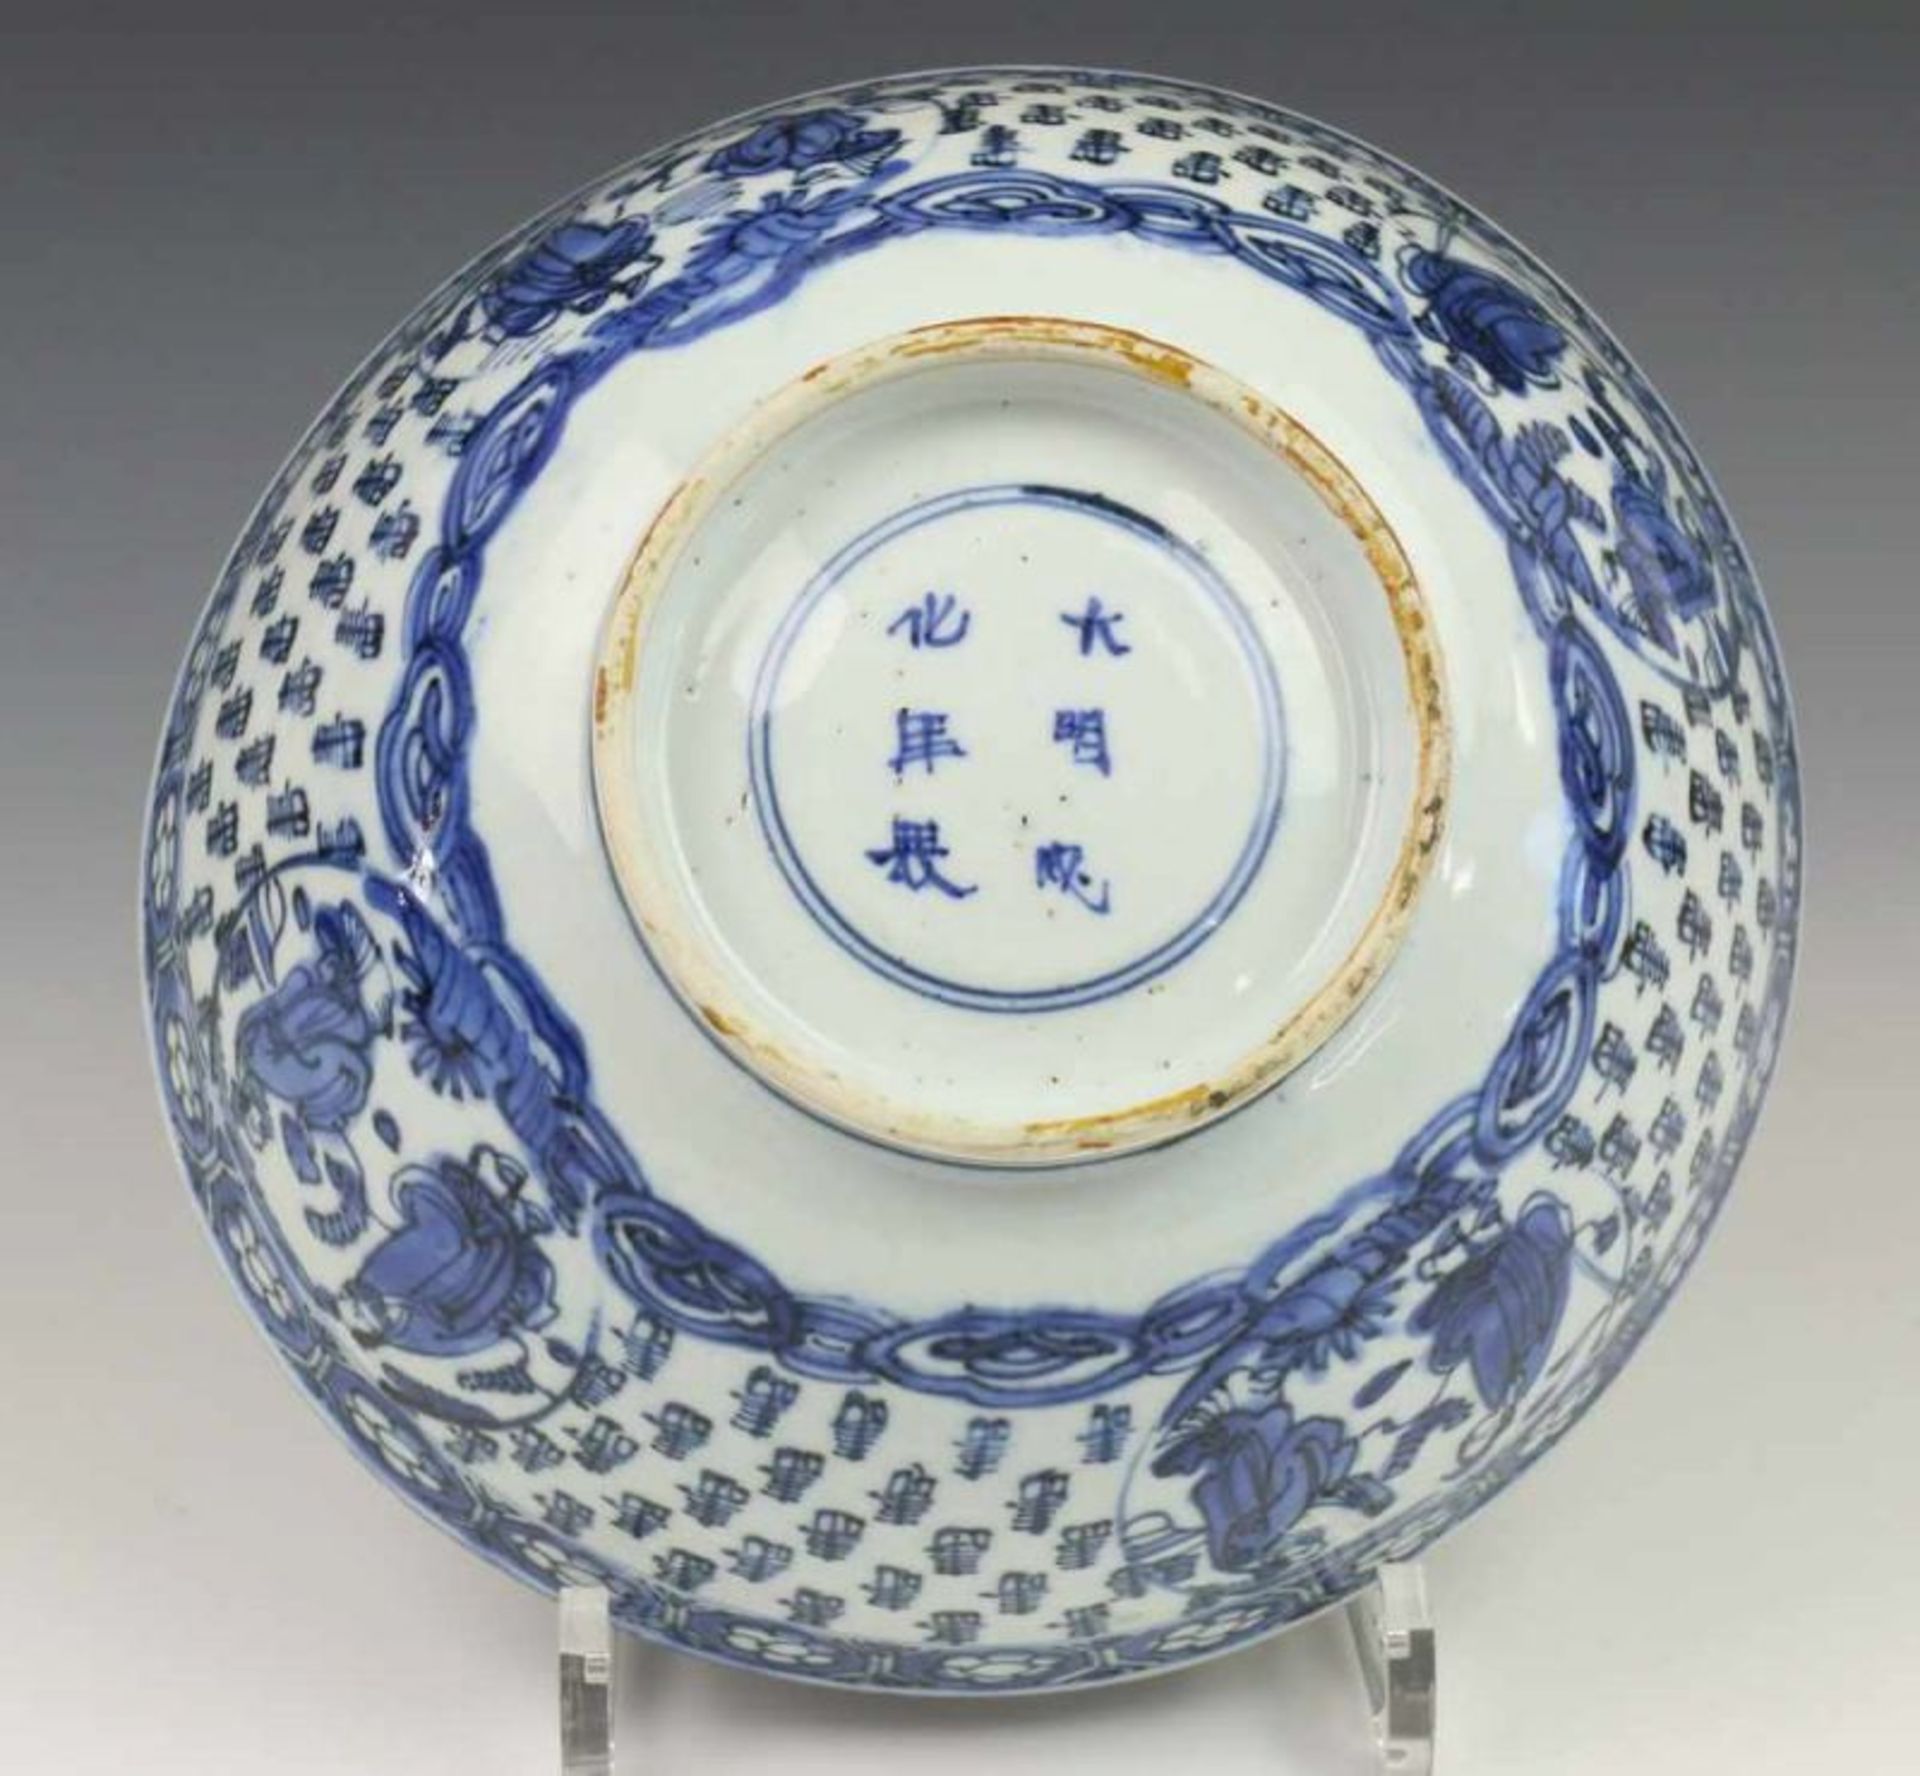 China, blauw-wit porseleinen kom, Wanli, met vol decor van karakters en medaillons waarin twee - Image 3 of 4